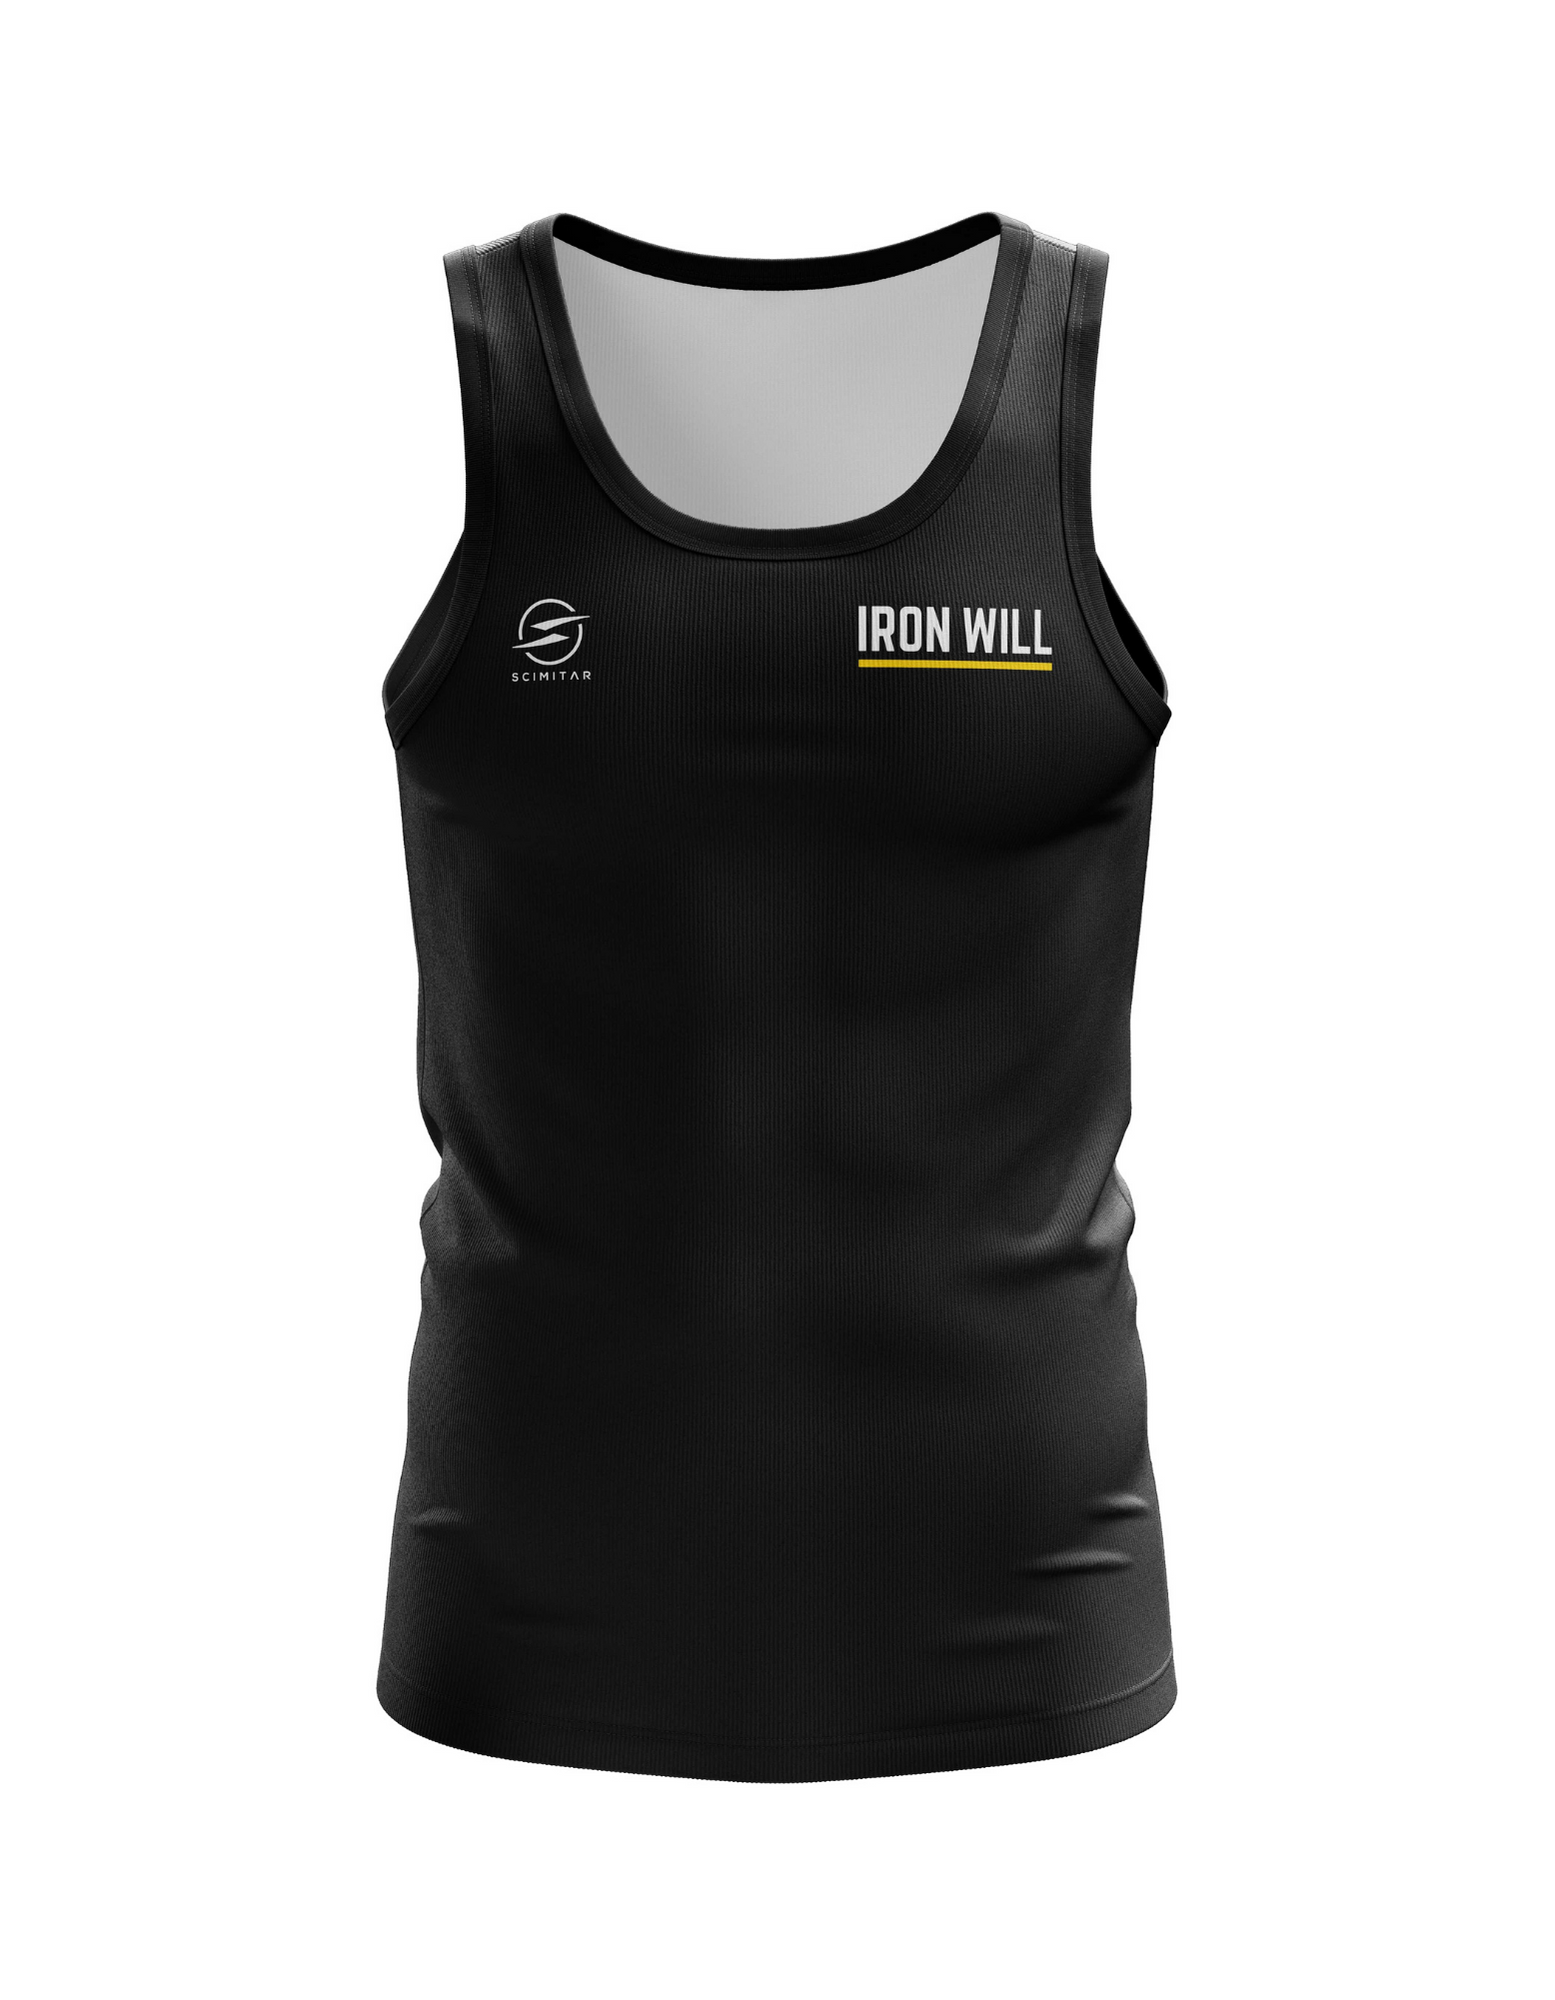 Official Games Athlete Vest (Black or Grey)